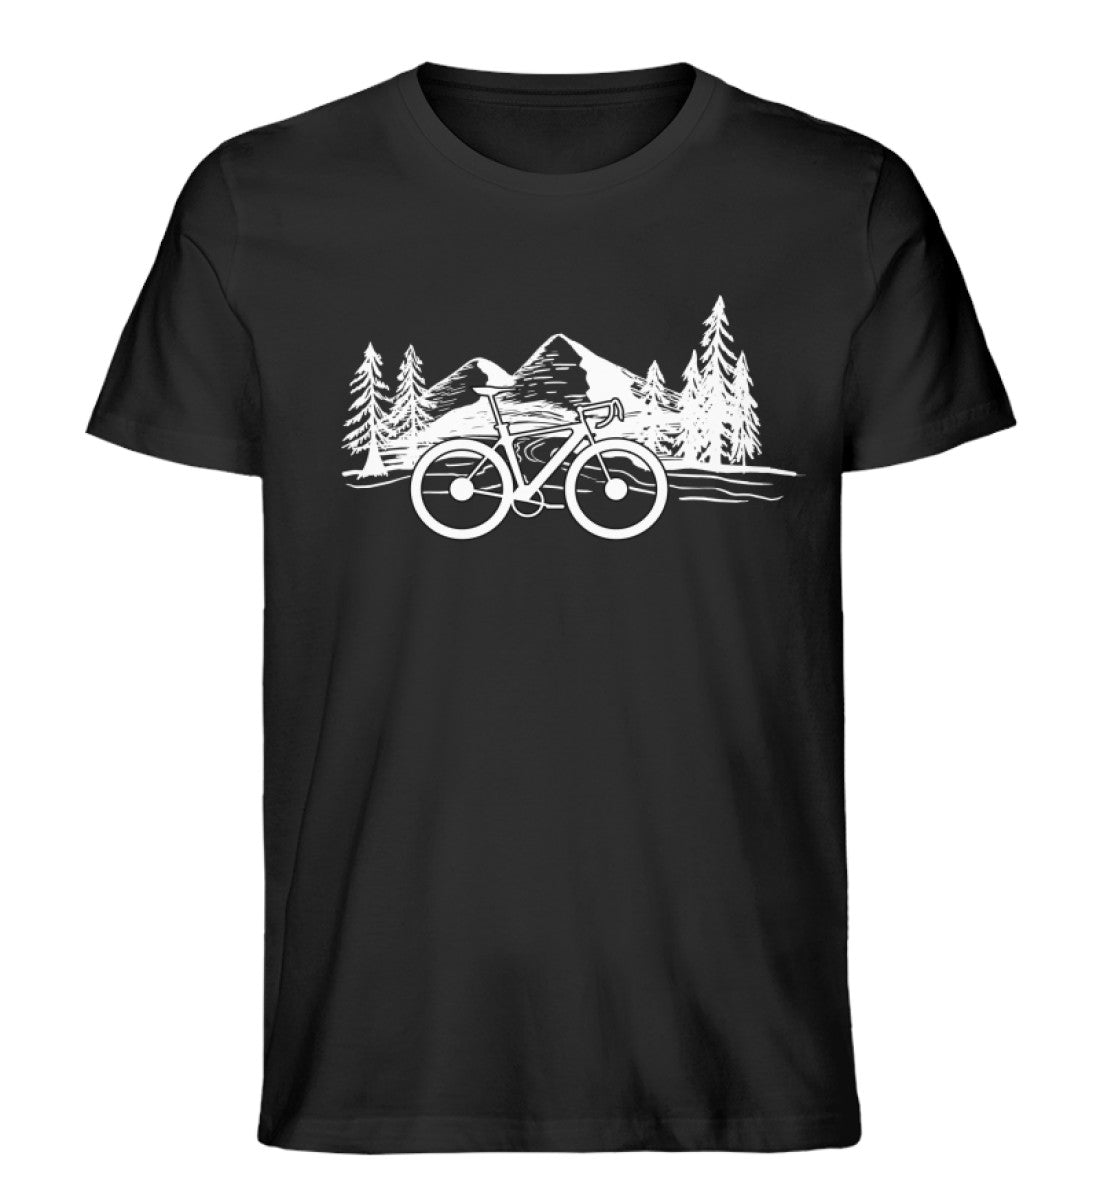 Fahrrad und Berge - Herren Organic T-Shirt fahrrad mountainbike Schwarz